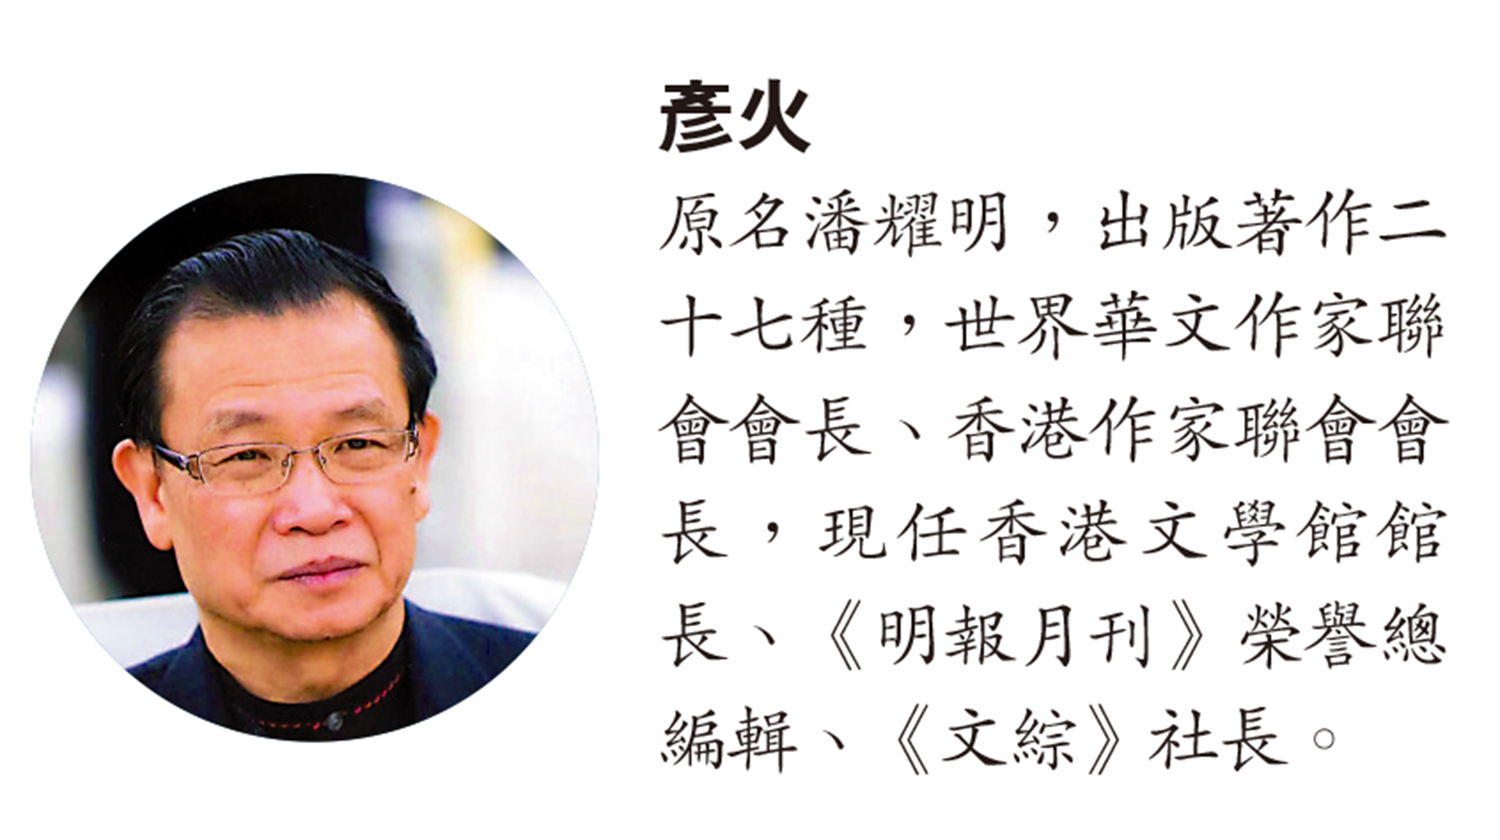 　　圖：彥火─原名潘耀明，出版著作二十七種，世界華文作家聯會會長、香港作家聯會會長，現任香港文學館館長、《明報月刊》榮譽總編輯、《文綜》社長。